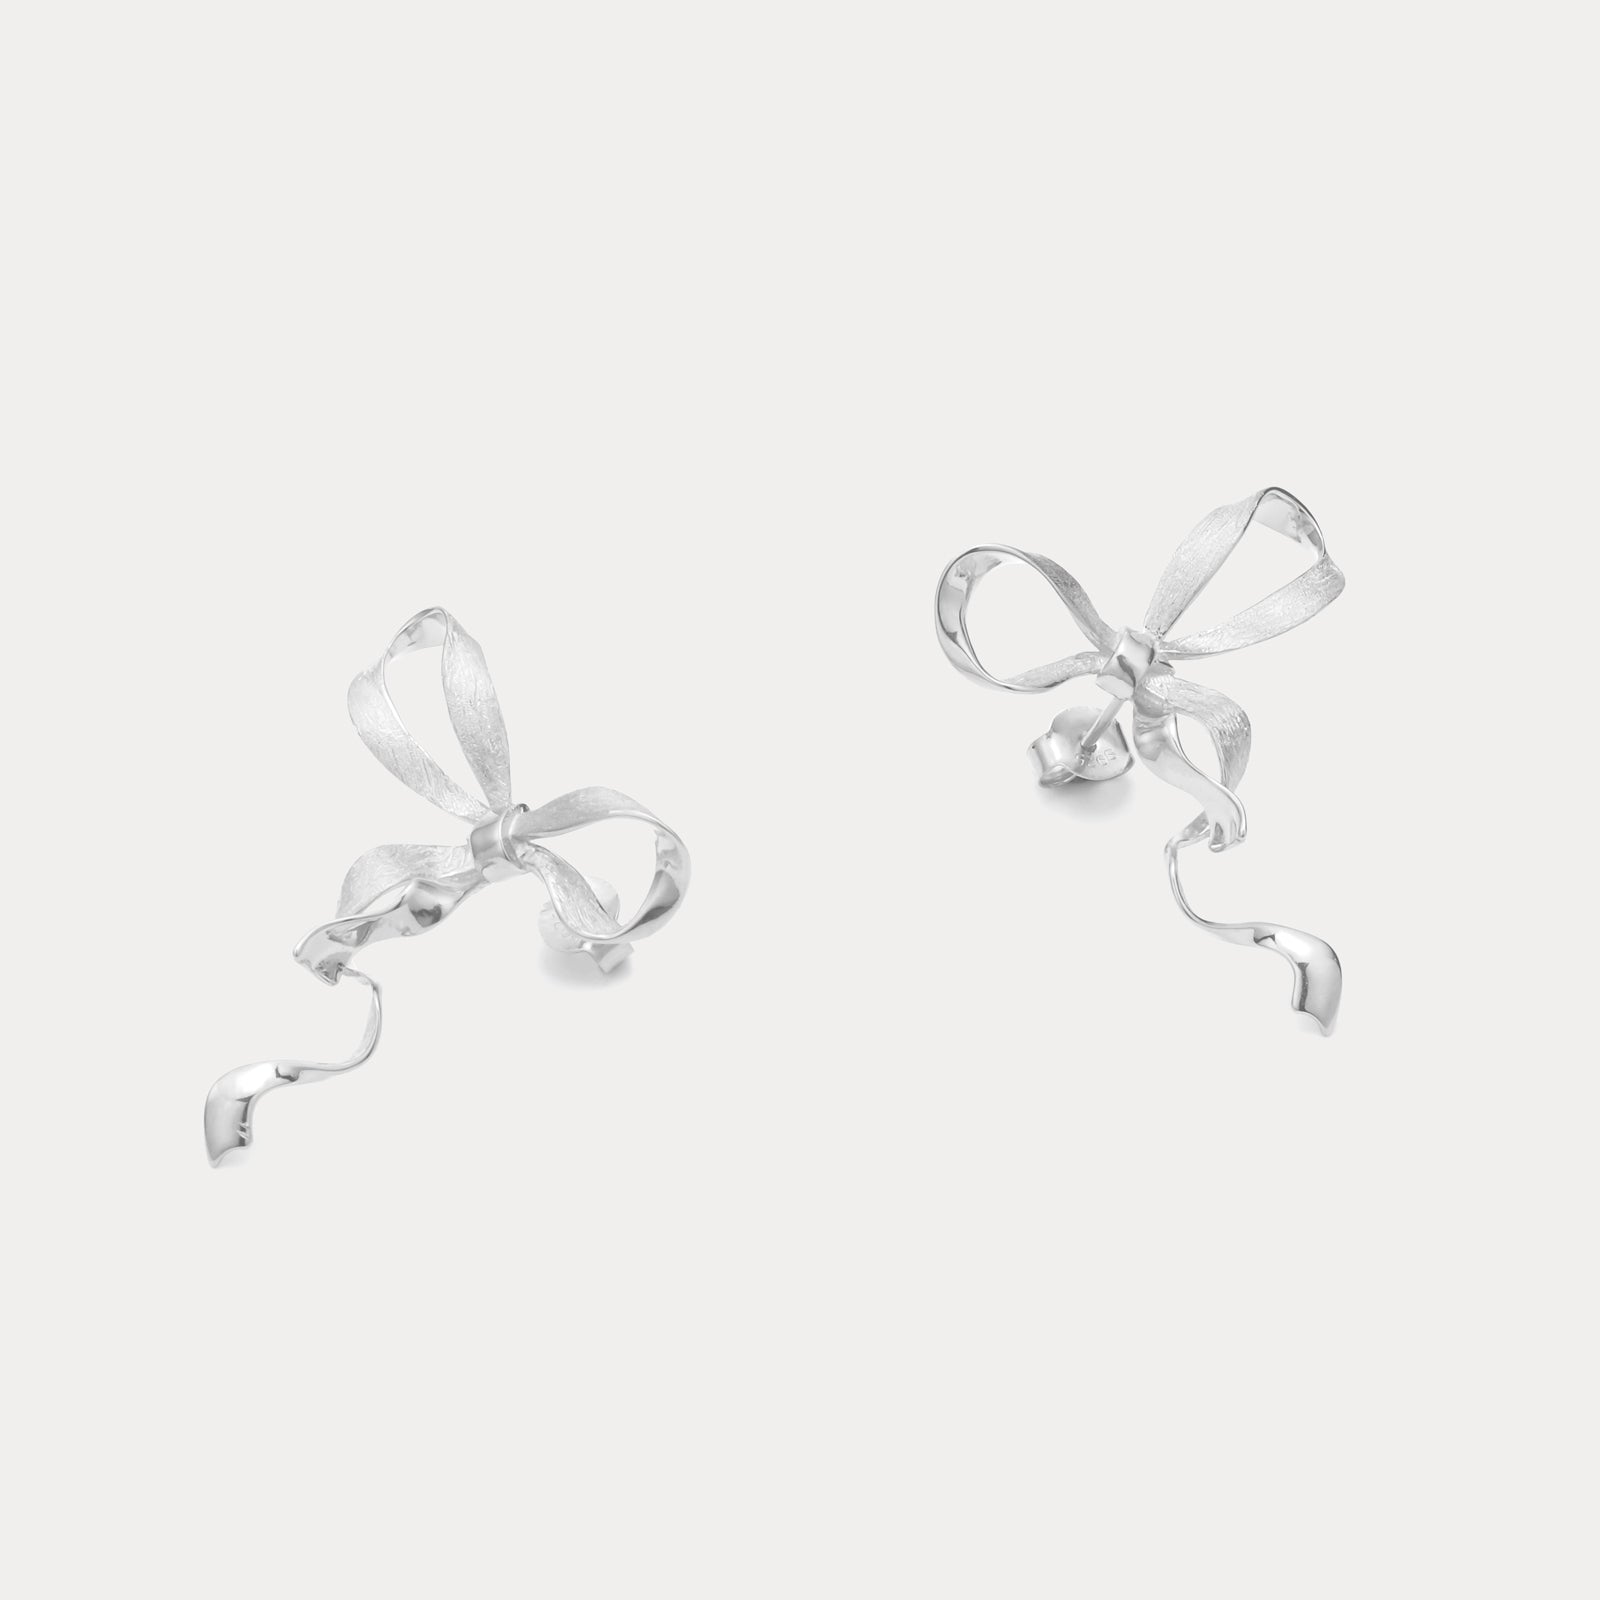 Silver Bow Earrings